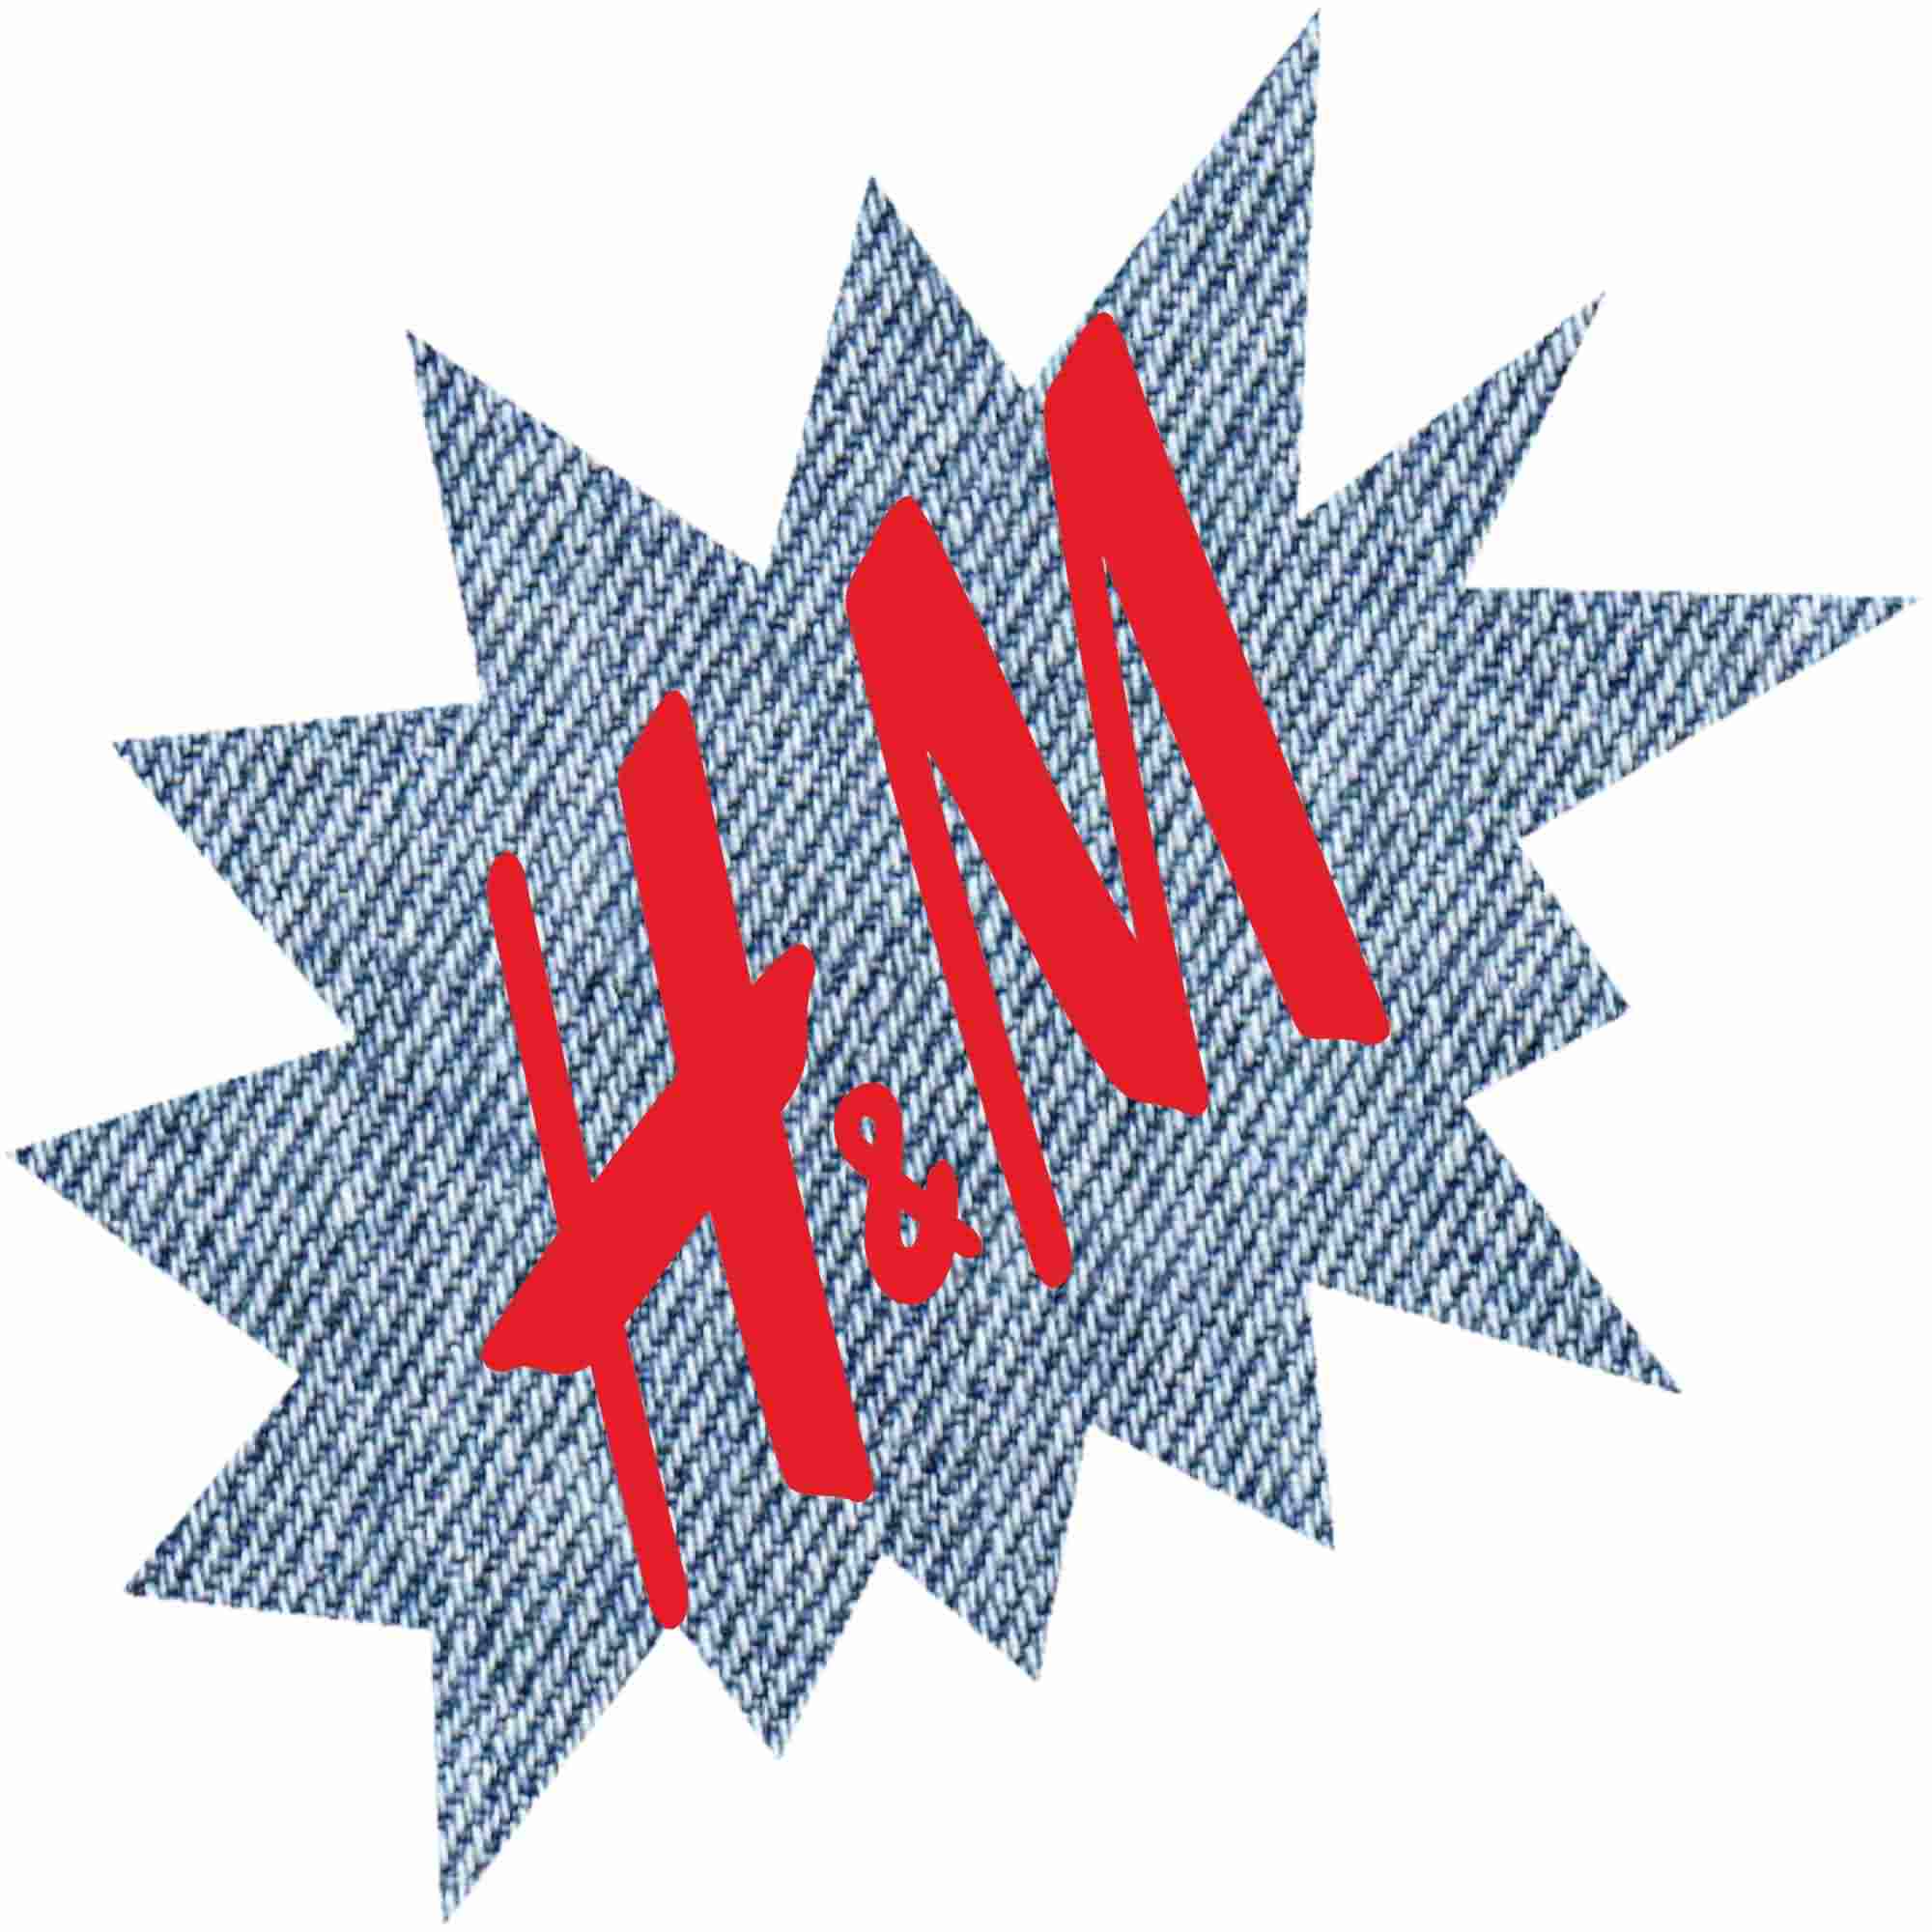 www.h&m.com www.hm.com Onlineshop